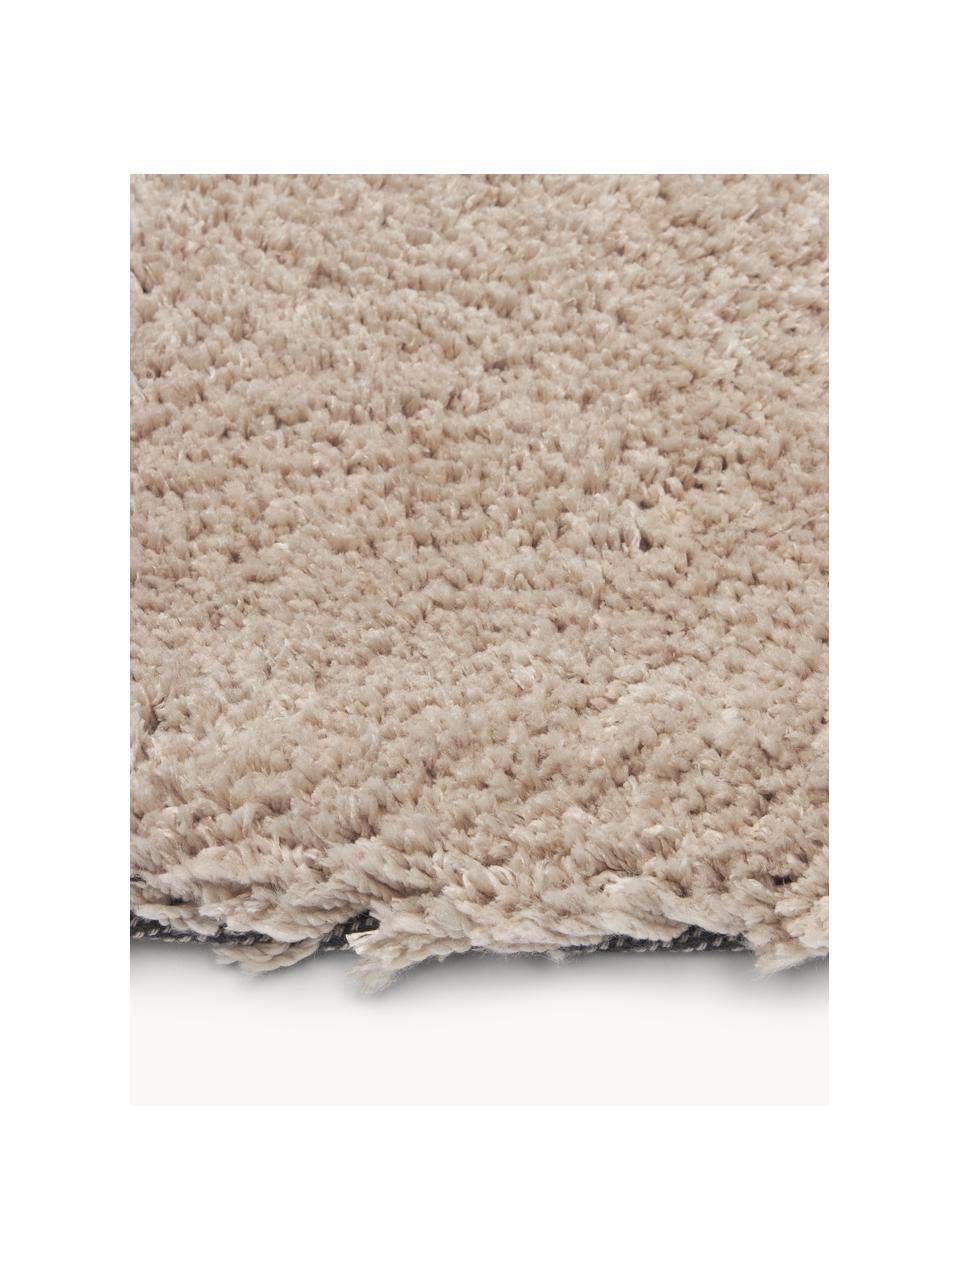 Pluizig hoogpolig vloerkleed Leighton in beige, Onderzijde: 70% polyester, 30% katoen, Beige-bruin, B 120 x L 180 cm (maat S)